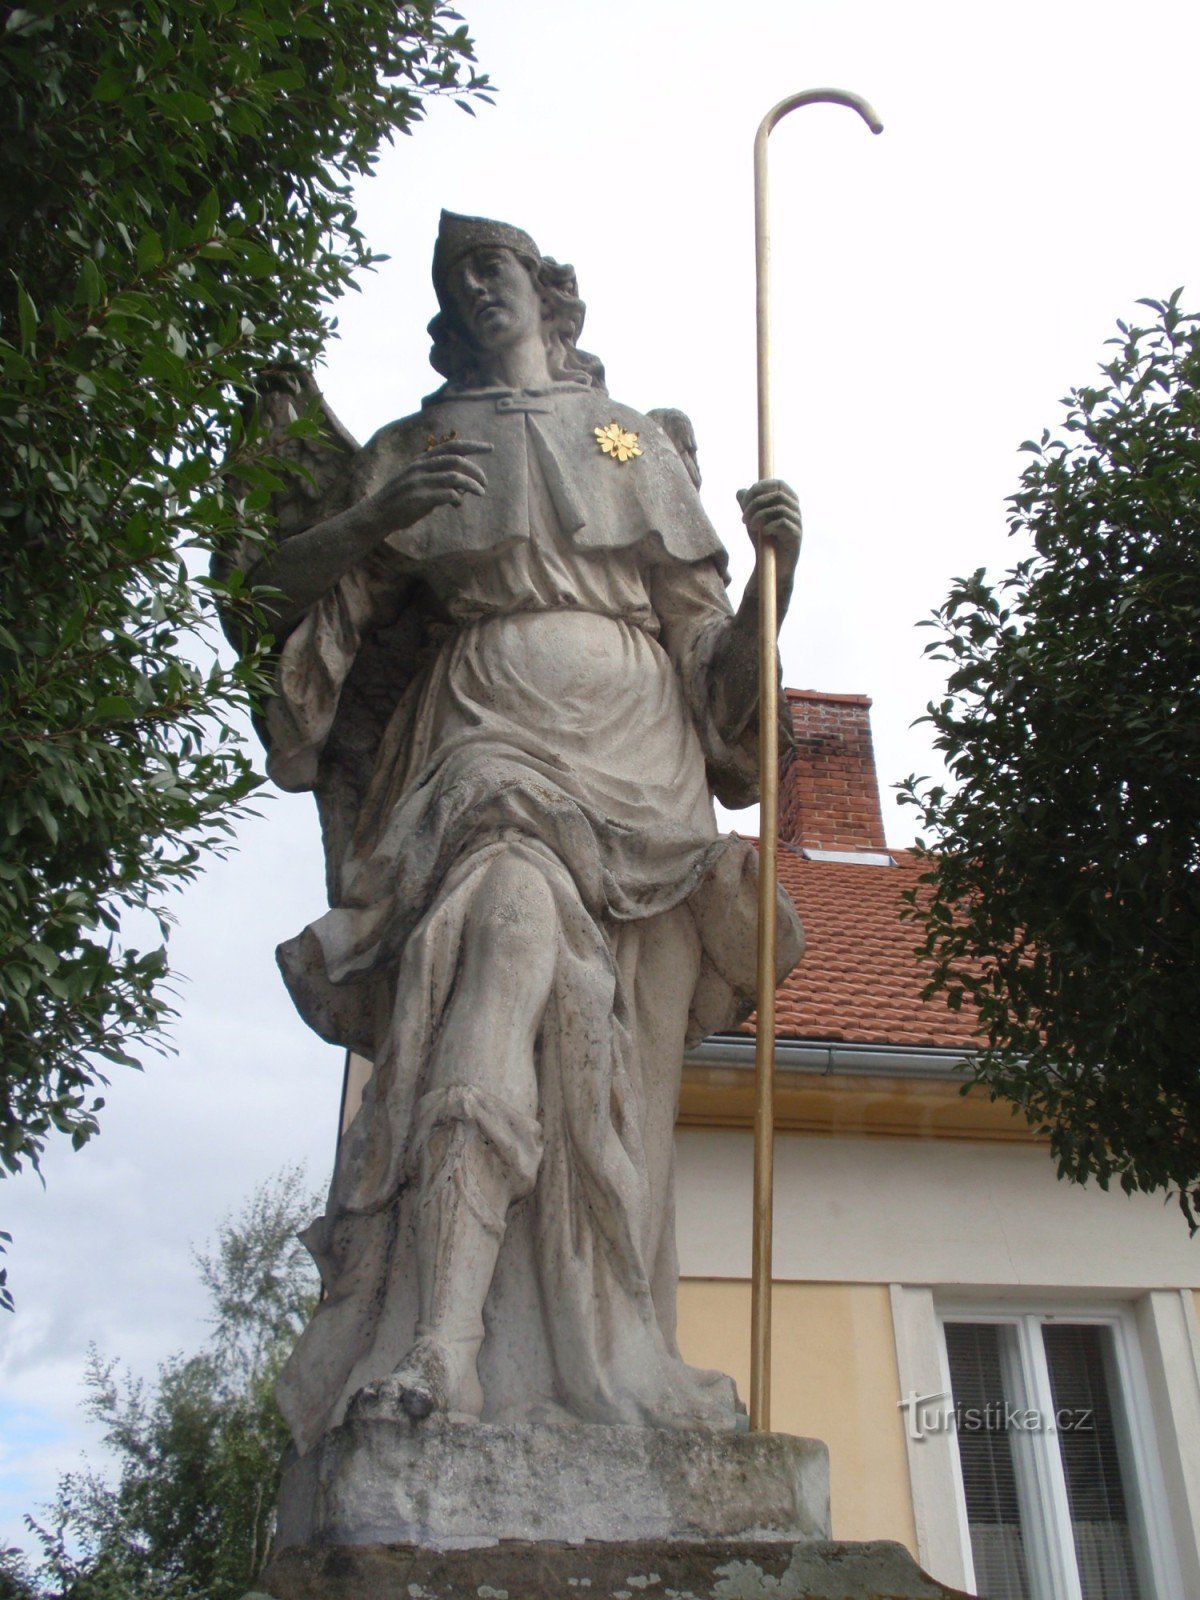 Estátua do Arcanjo Rafael em Rájc-Jestřebí